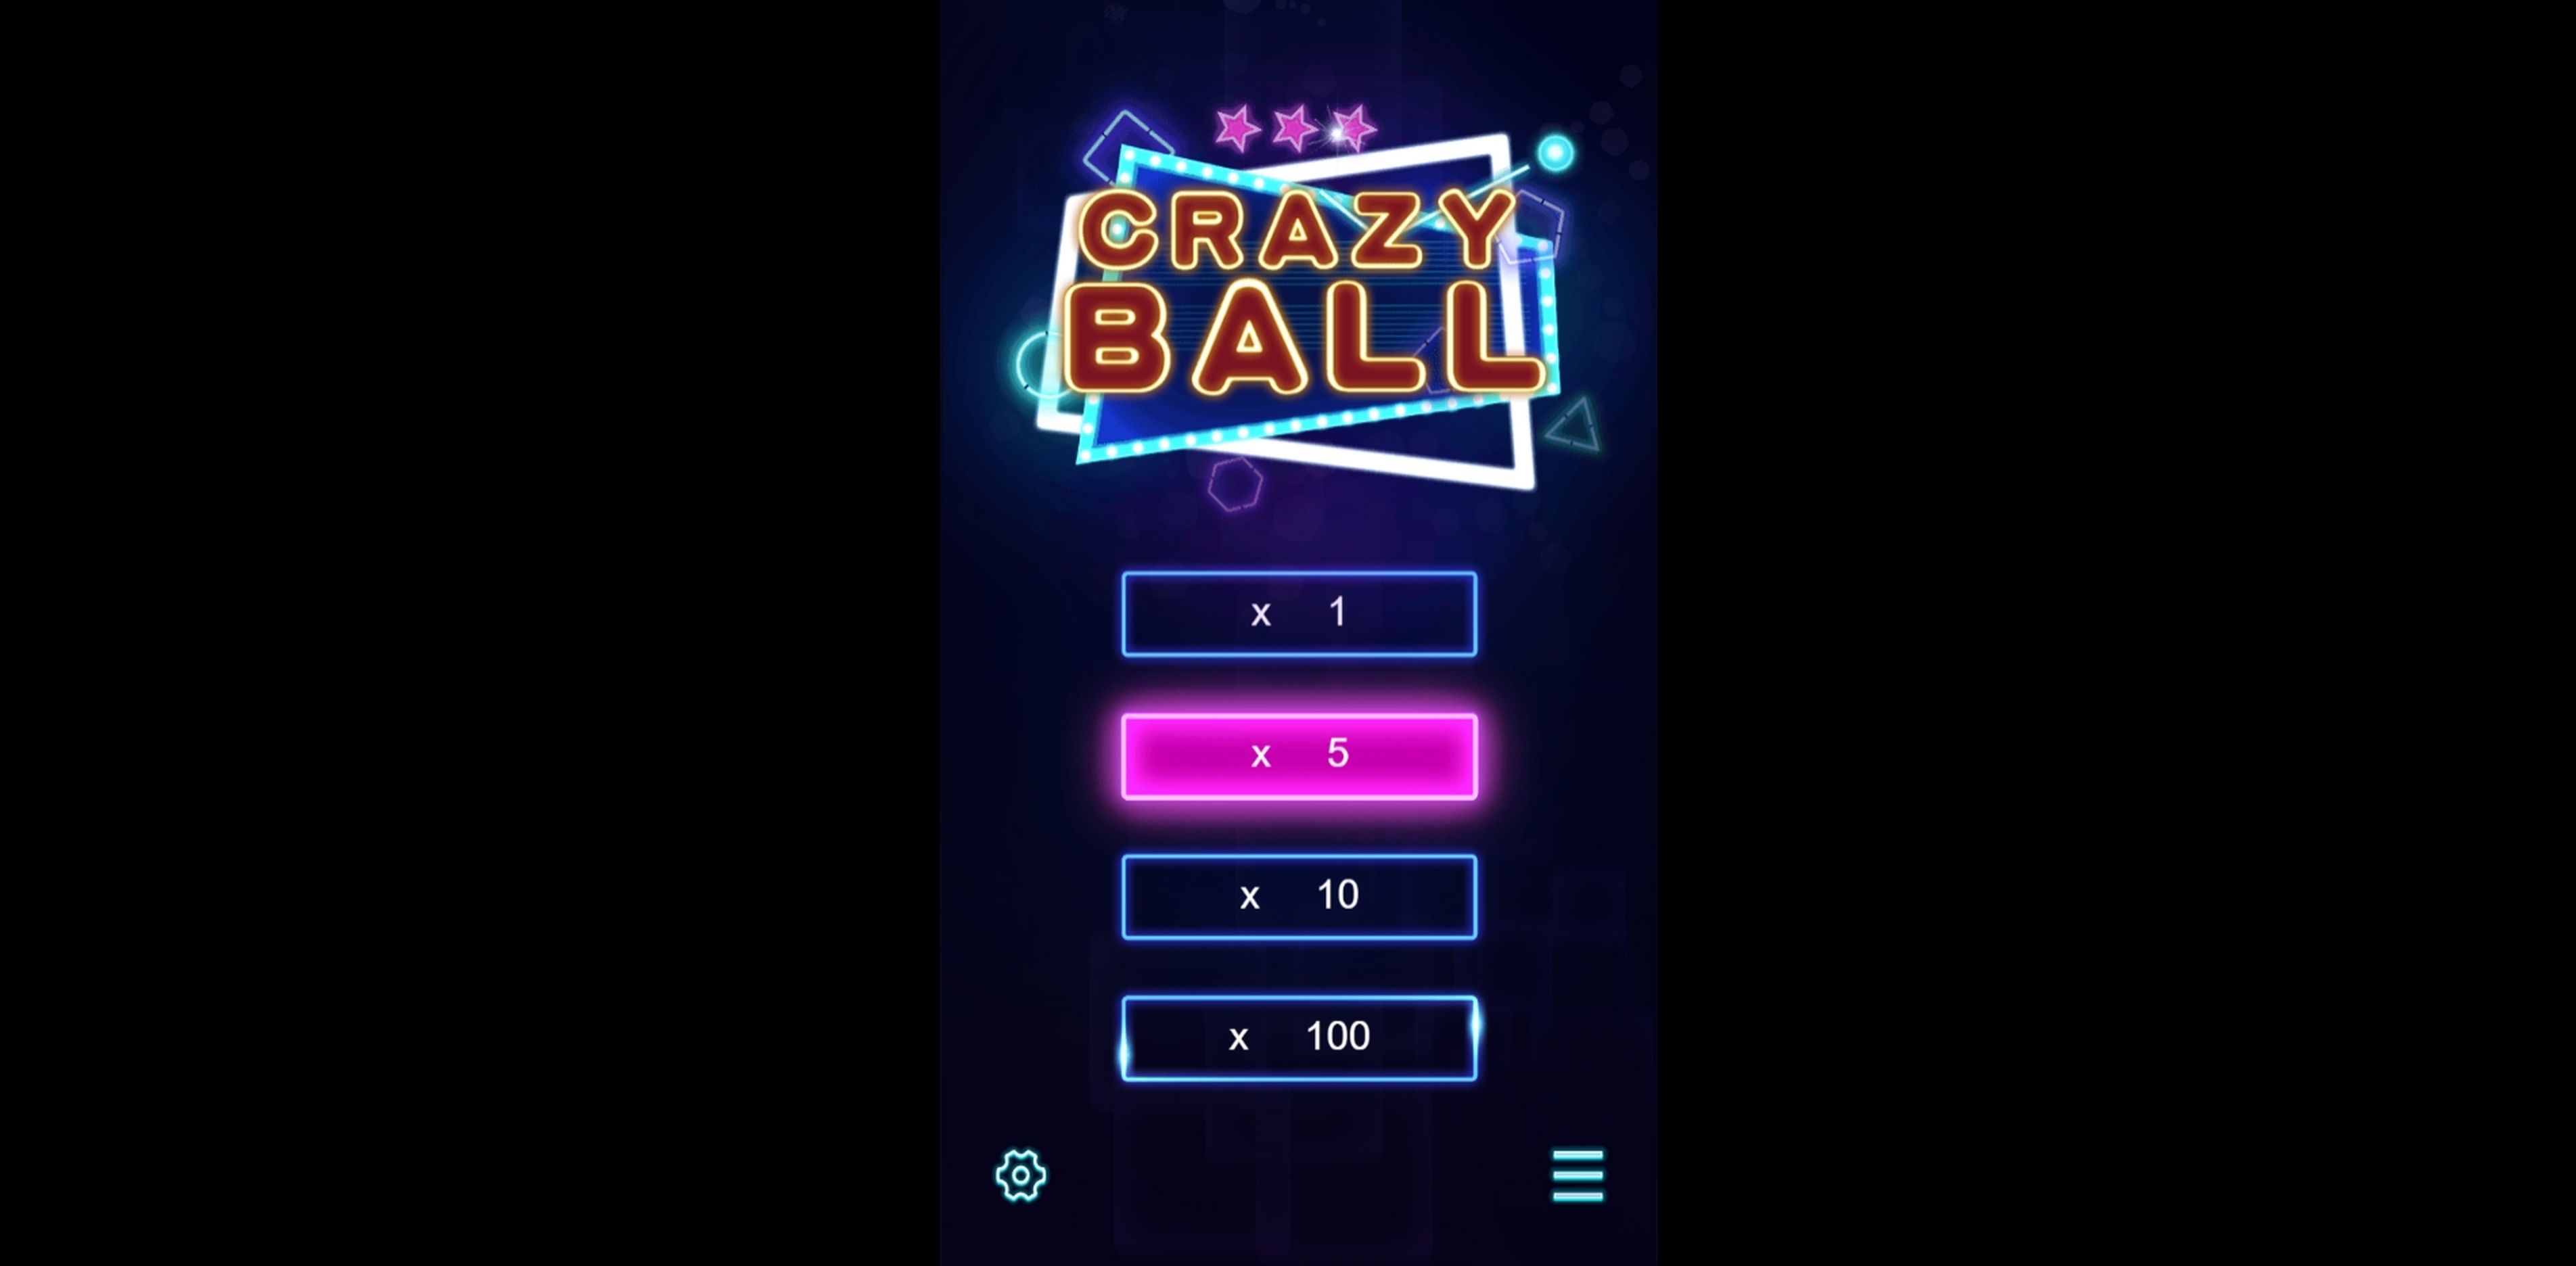 Crazy Ball demo